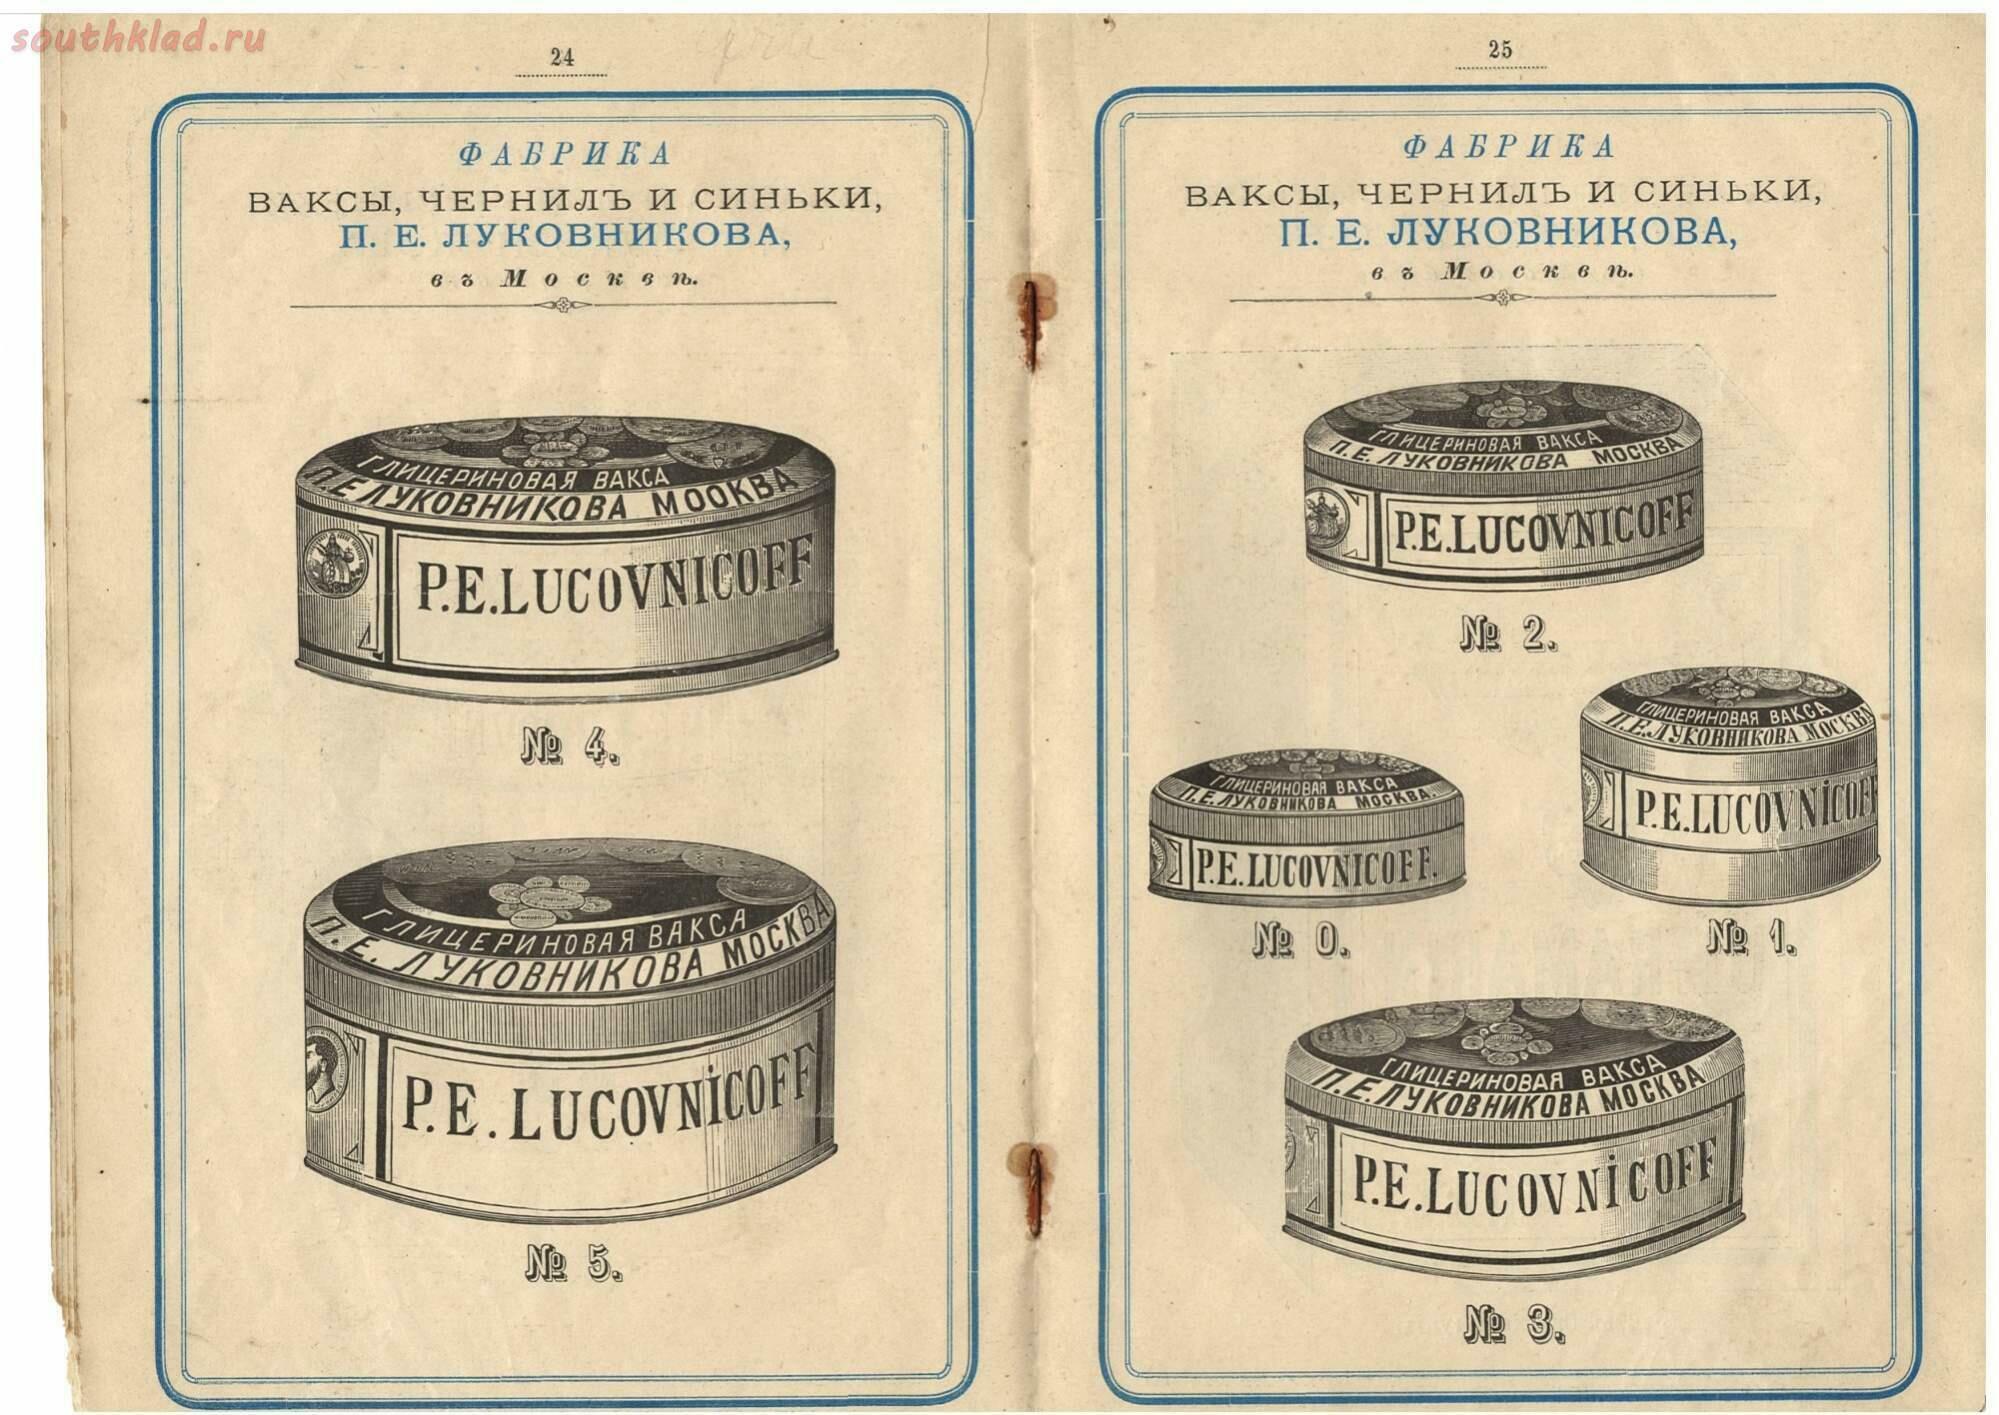 Фабрика ваксы и чернил П. Луковникова 1894 года История,Реклама